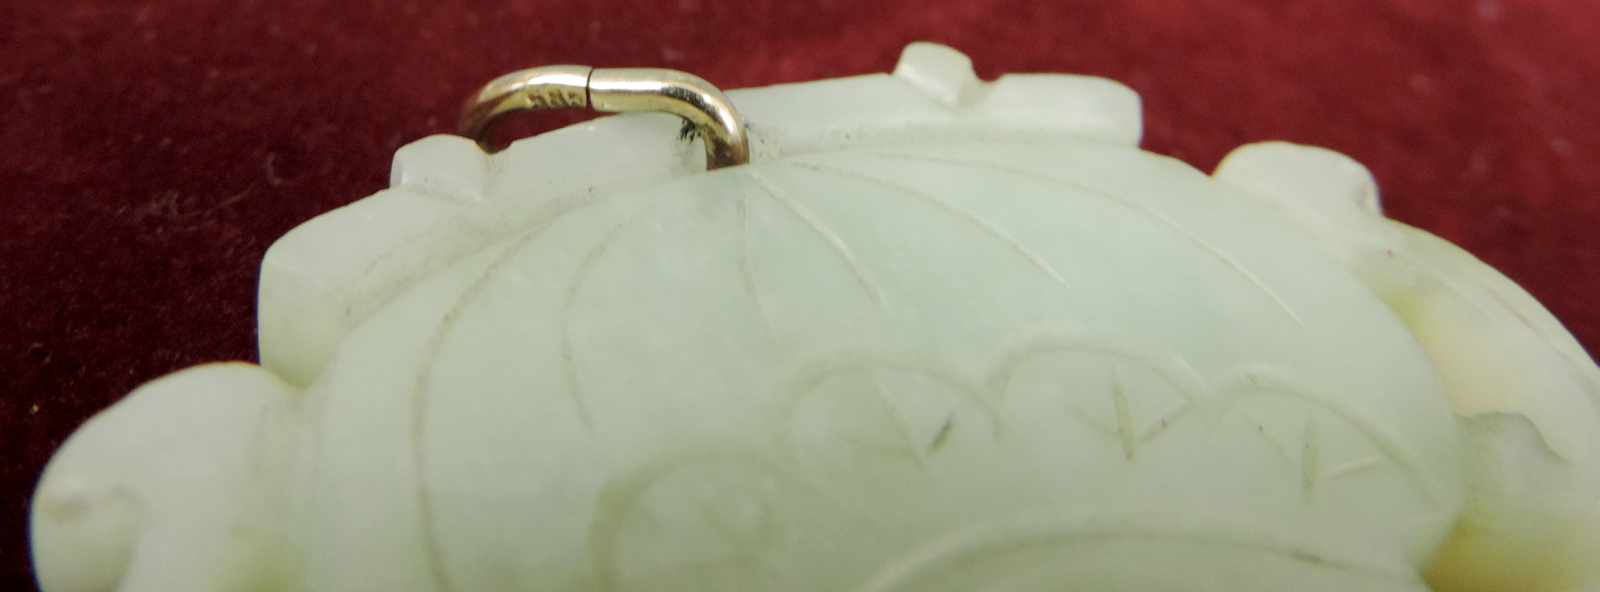 Jadeanhänger mit Gold- Öse, 585. China wohl Republik. 33,6 Gramm Gesamtgewicht. 61,9 mm x 59,8 mm - Image 3 of 3